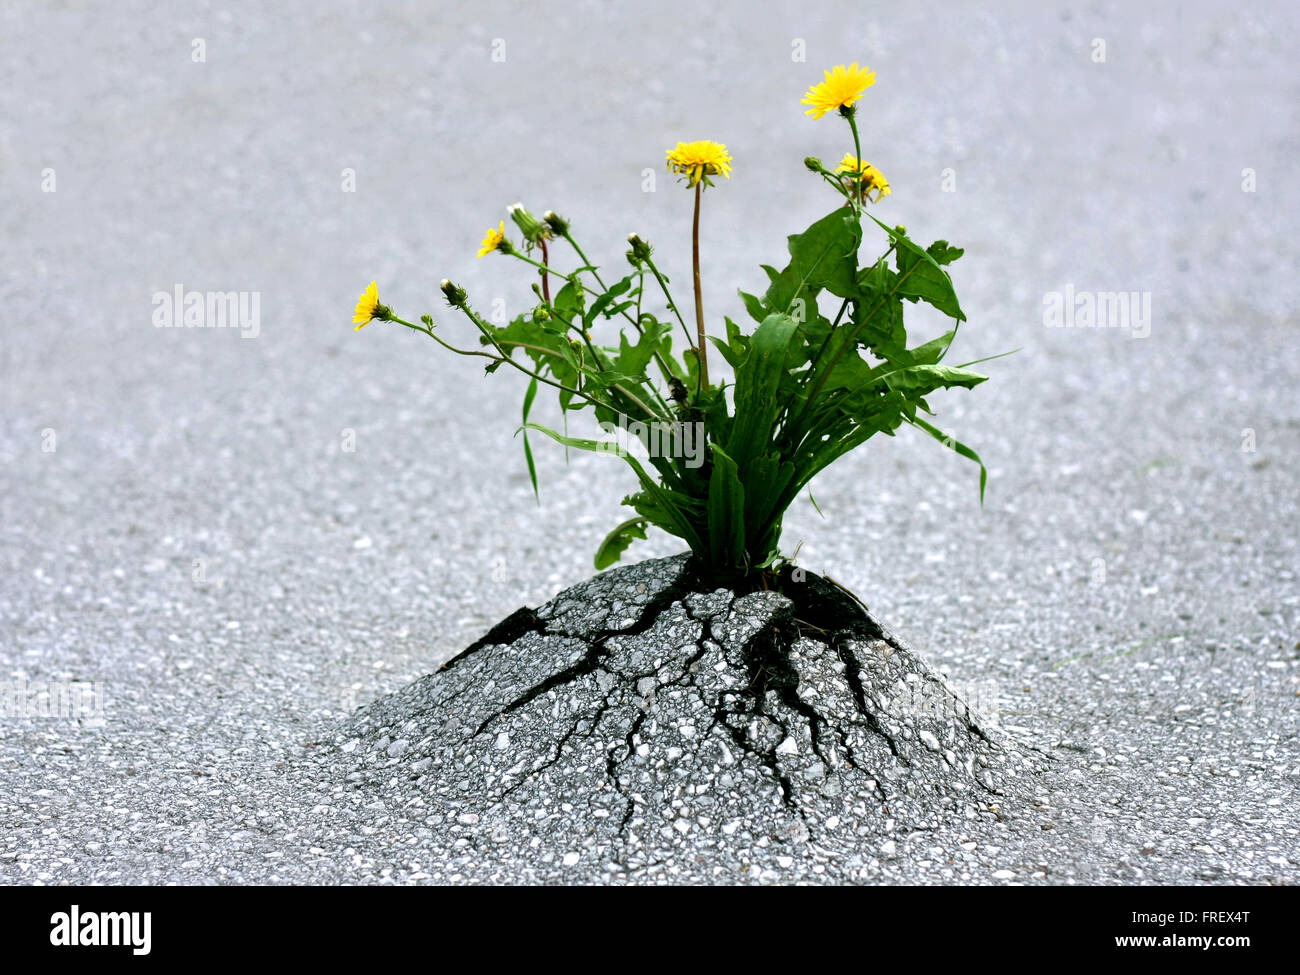 Les plantes levées par rock hard de l'asphalte. Illustre la force de la nature et de réalisations extraordinaires contre toute attente ! Banque D'Images